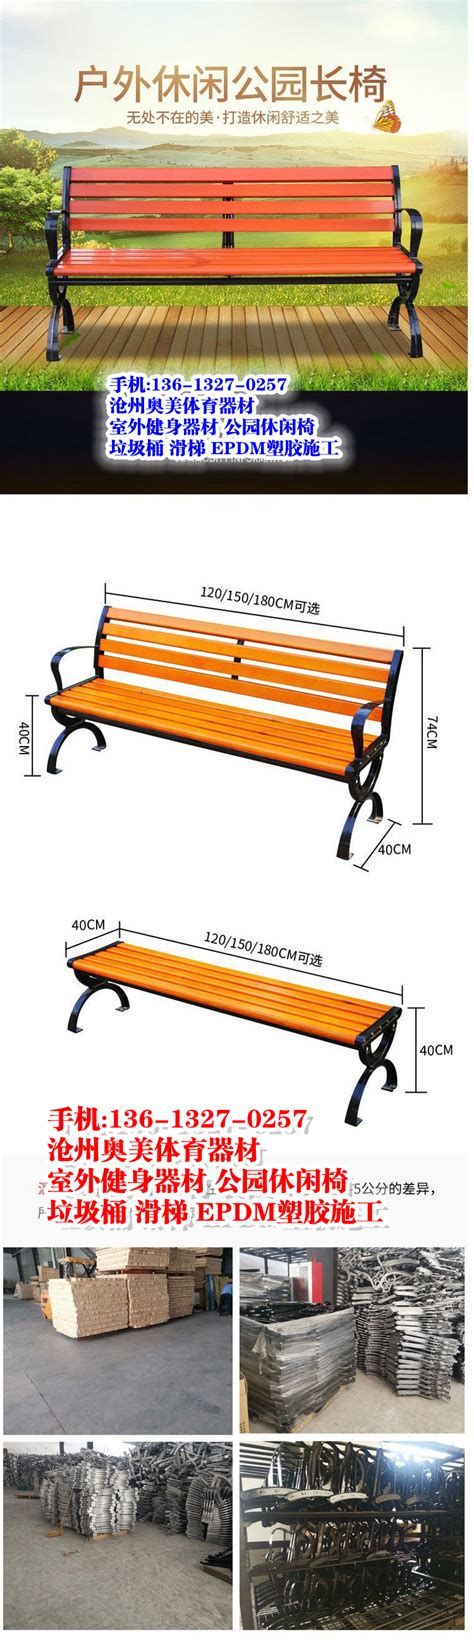 太原街道社区公园长条休息凳环卫造型休闲椅 - 哔哩哔哩